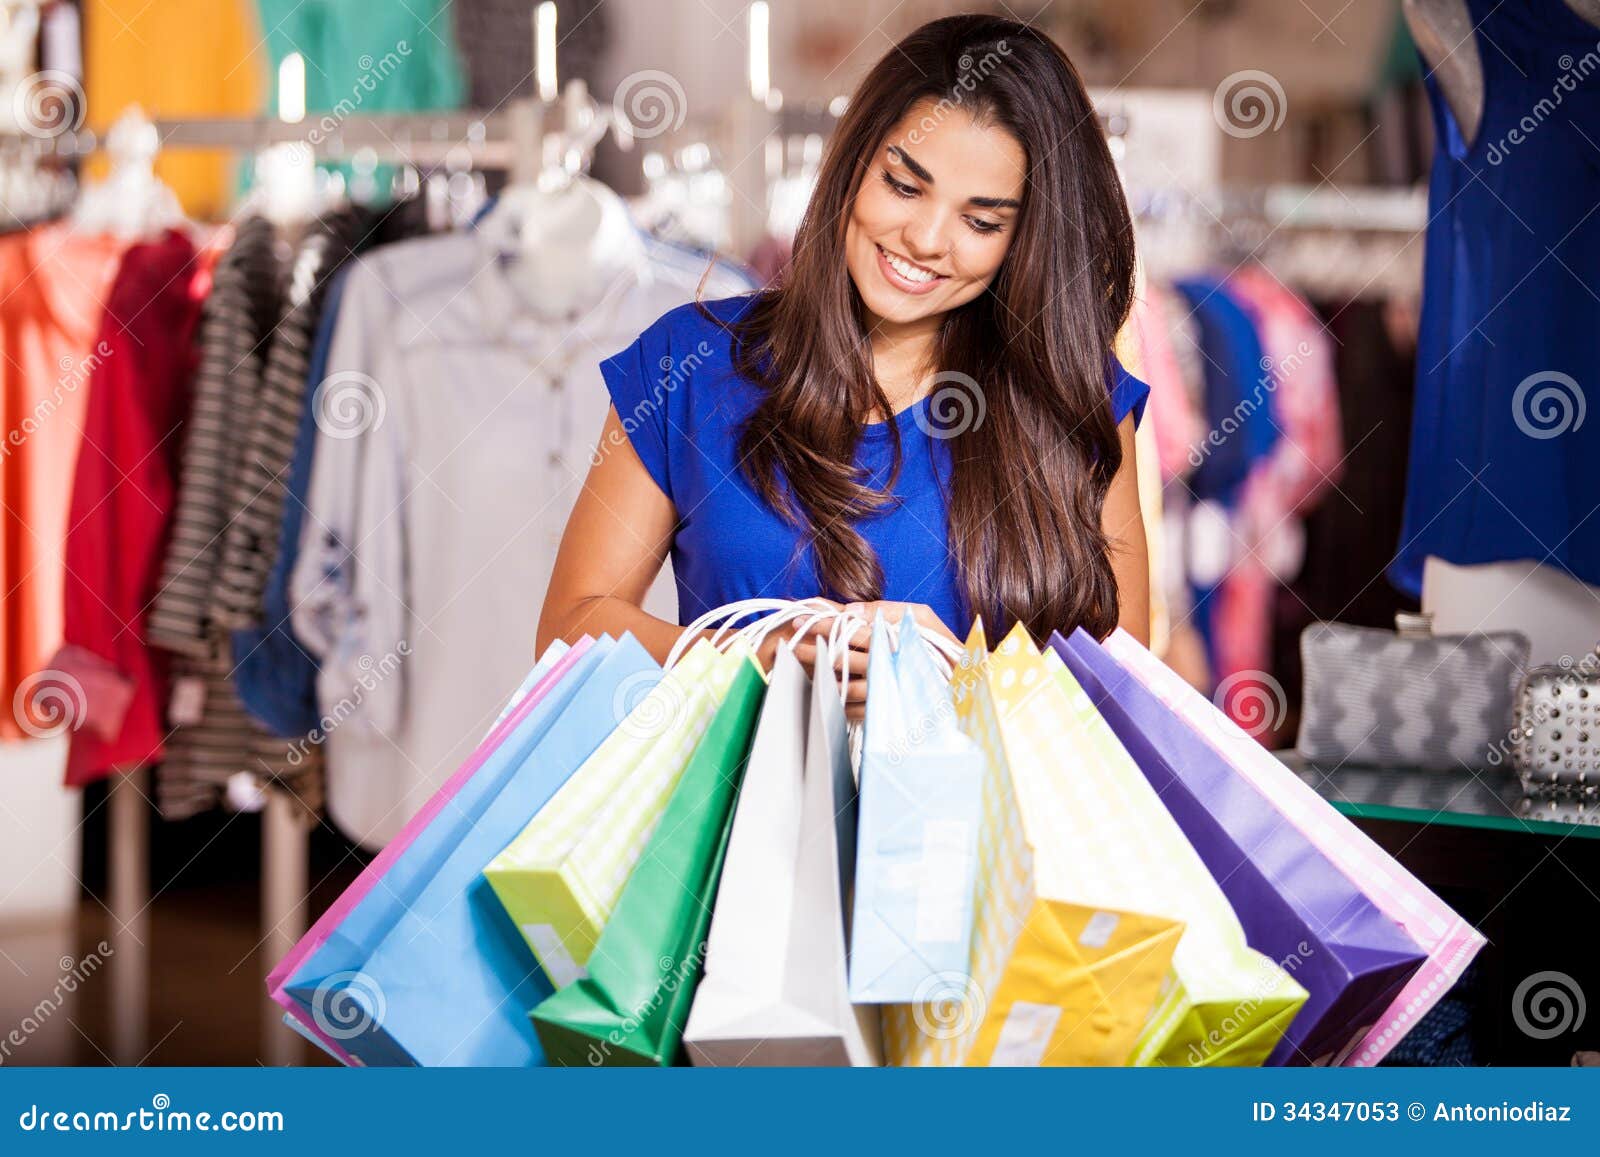 Увеличить продажу одежды. Девушка с покупками. Девушка в магазине улыбается. Девушка покупает одежду картинки. Покупка одежды.